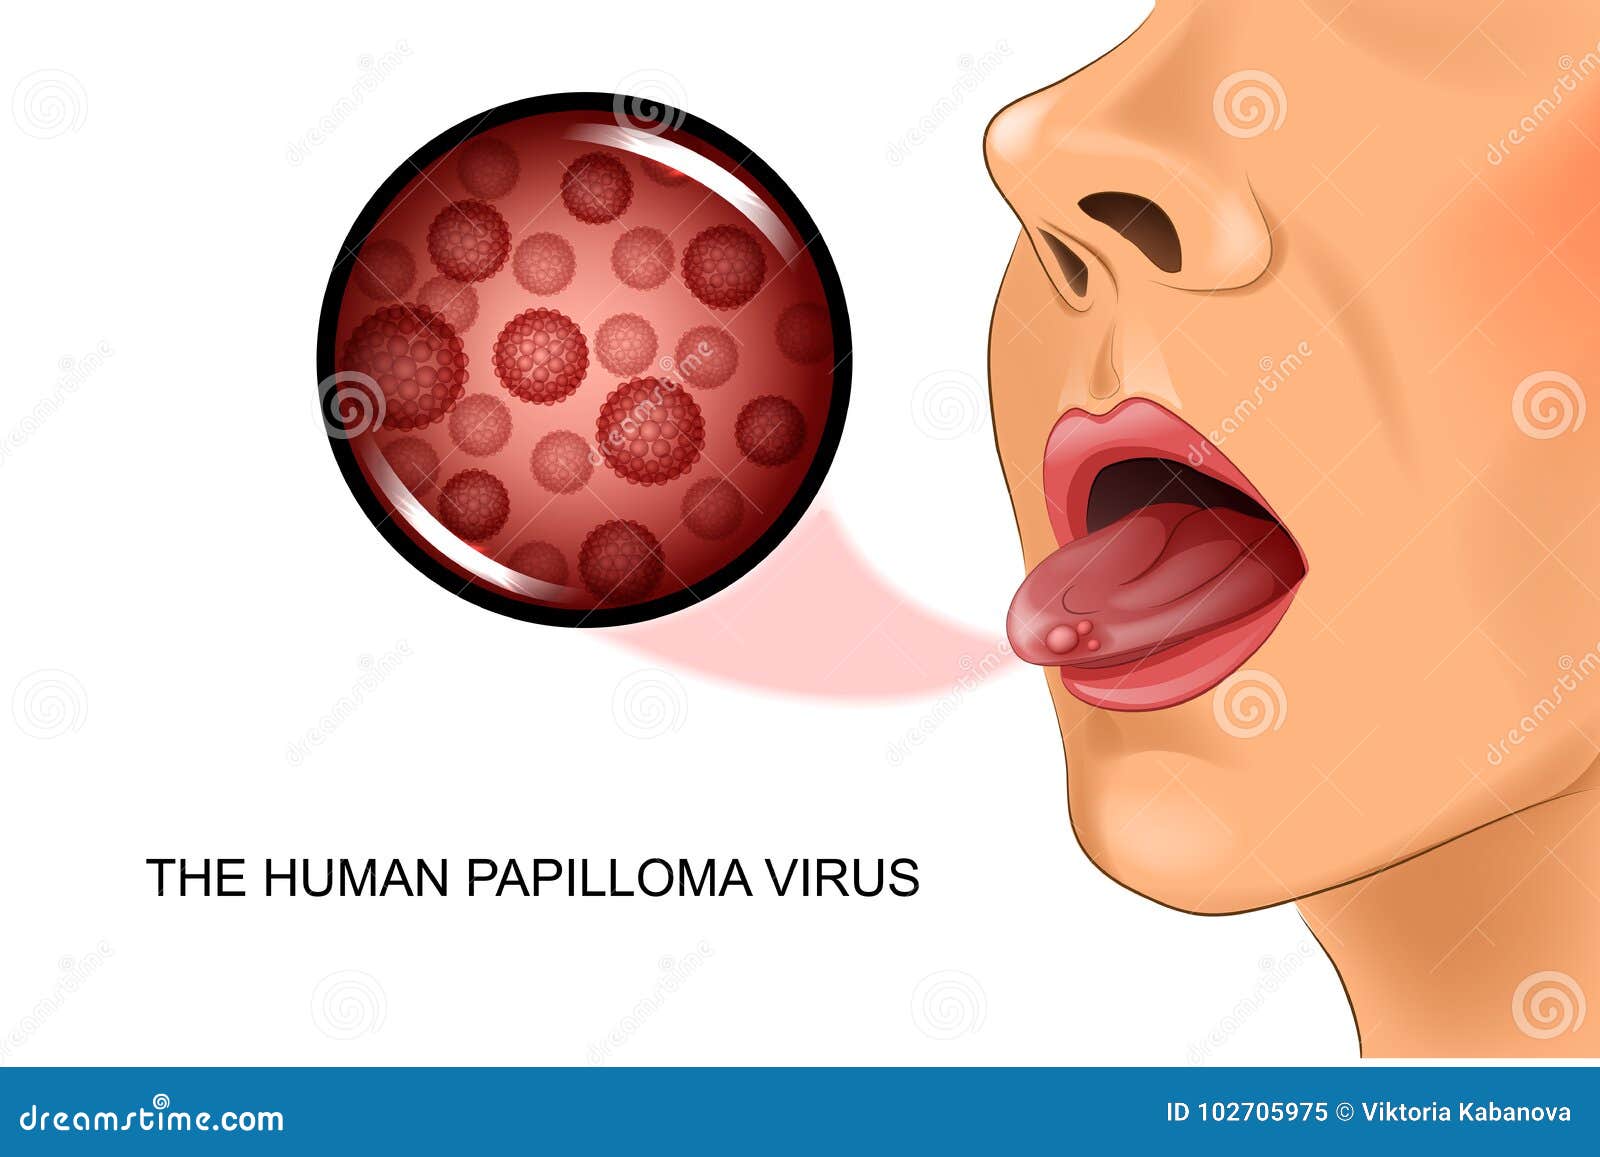 papillomavirus image)